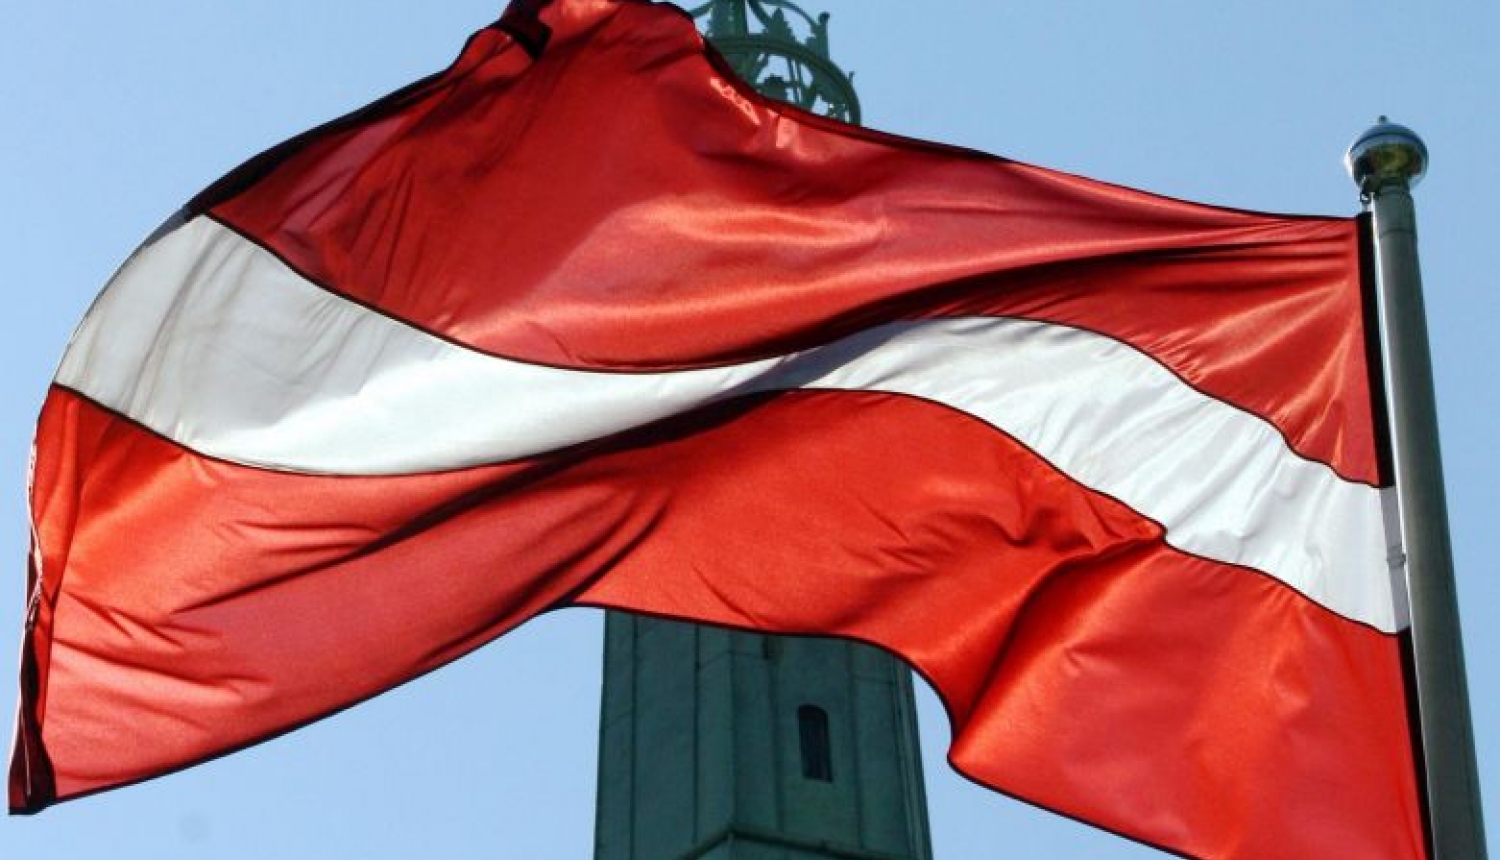 Valsts prezidenta Raimonda Vējoņa apsveikums konstitucionālā likuma “Par Latvijas Republikas valstisko statusu” pieņemšanas 27. gadadienā